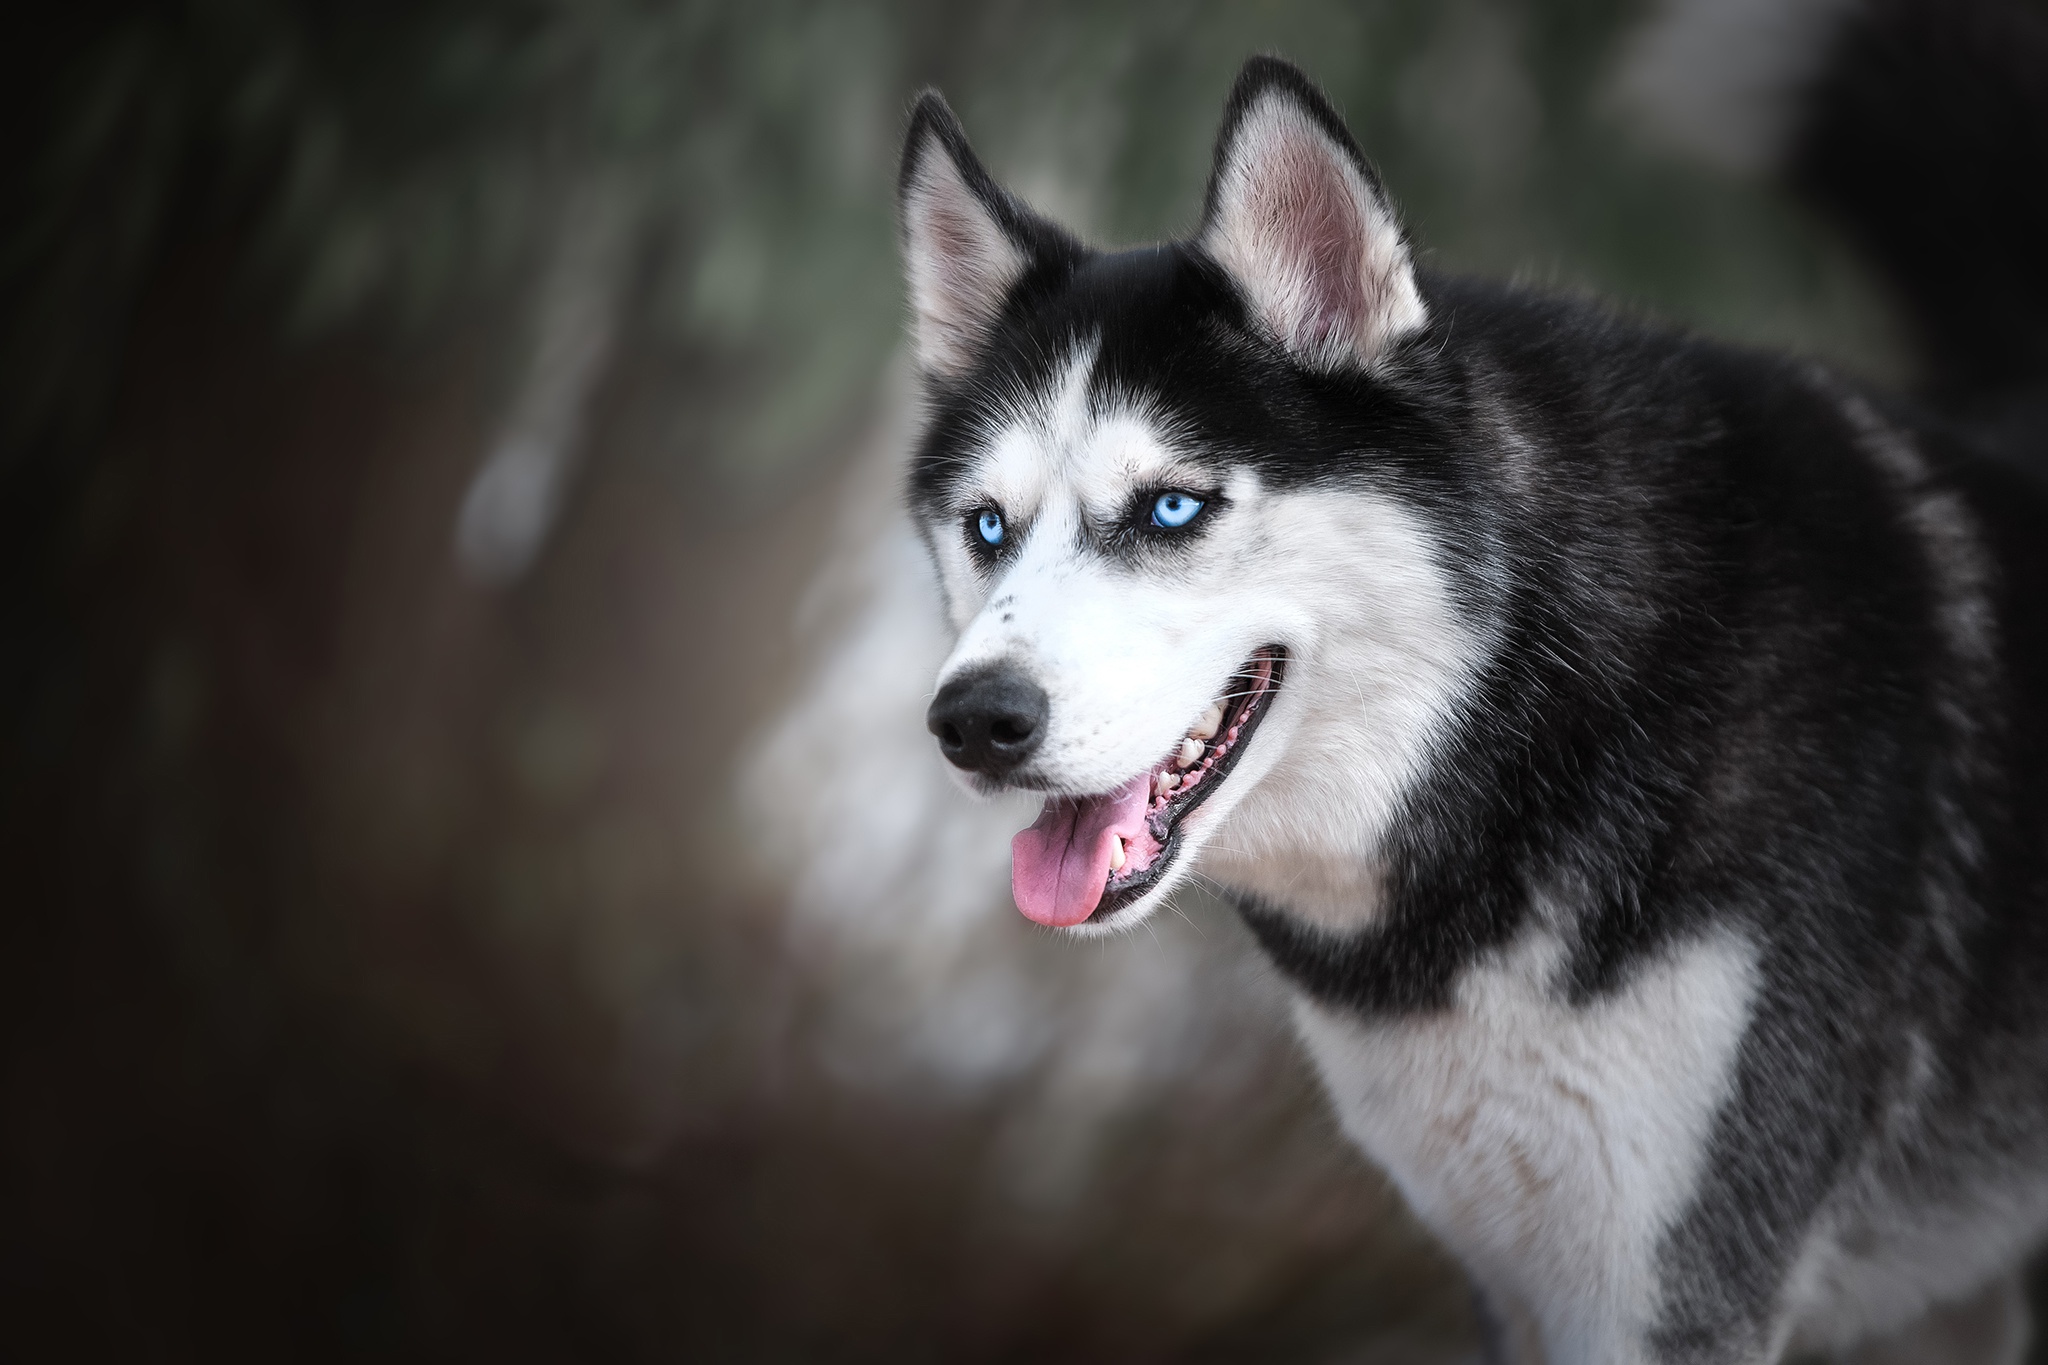 西伯利亚雪橇犬的肖像